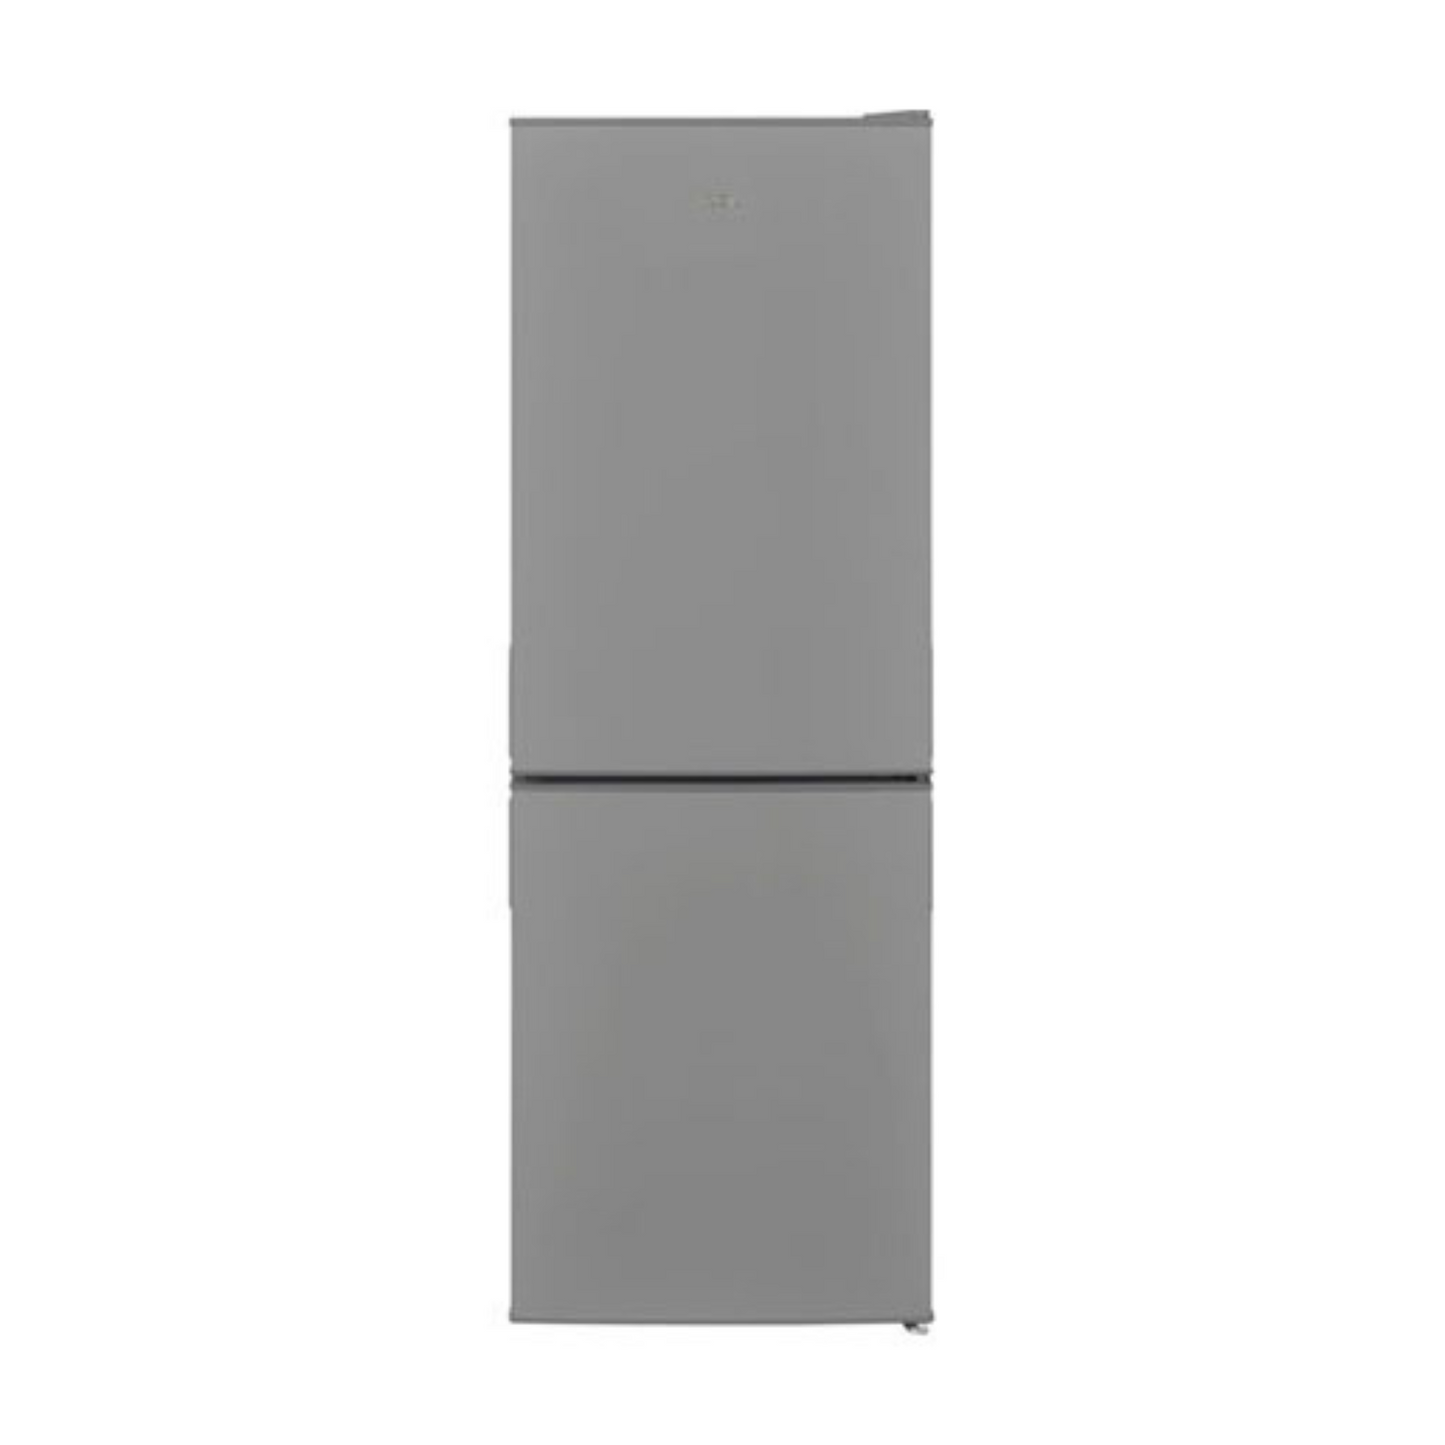 Logik 164L Double Door Refrigerator, LFC50S22